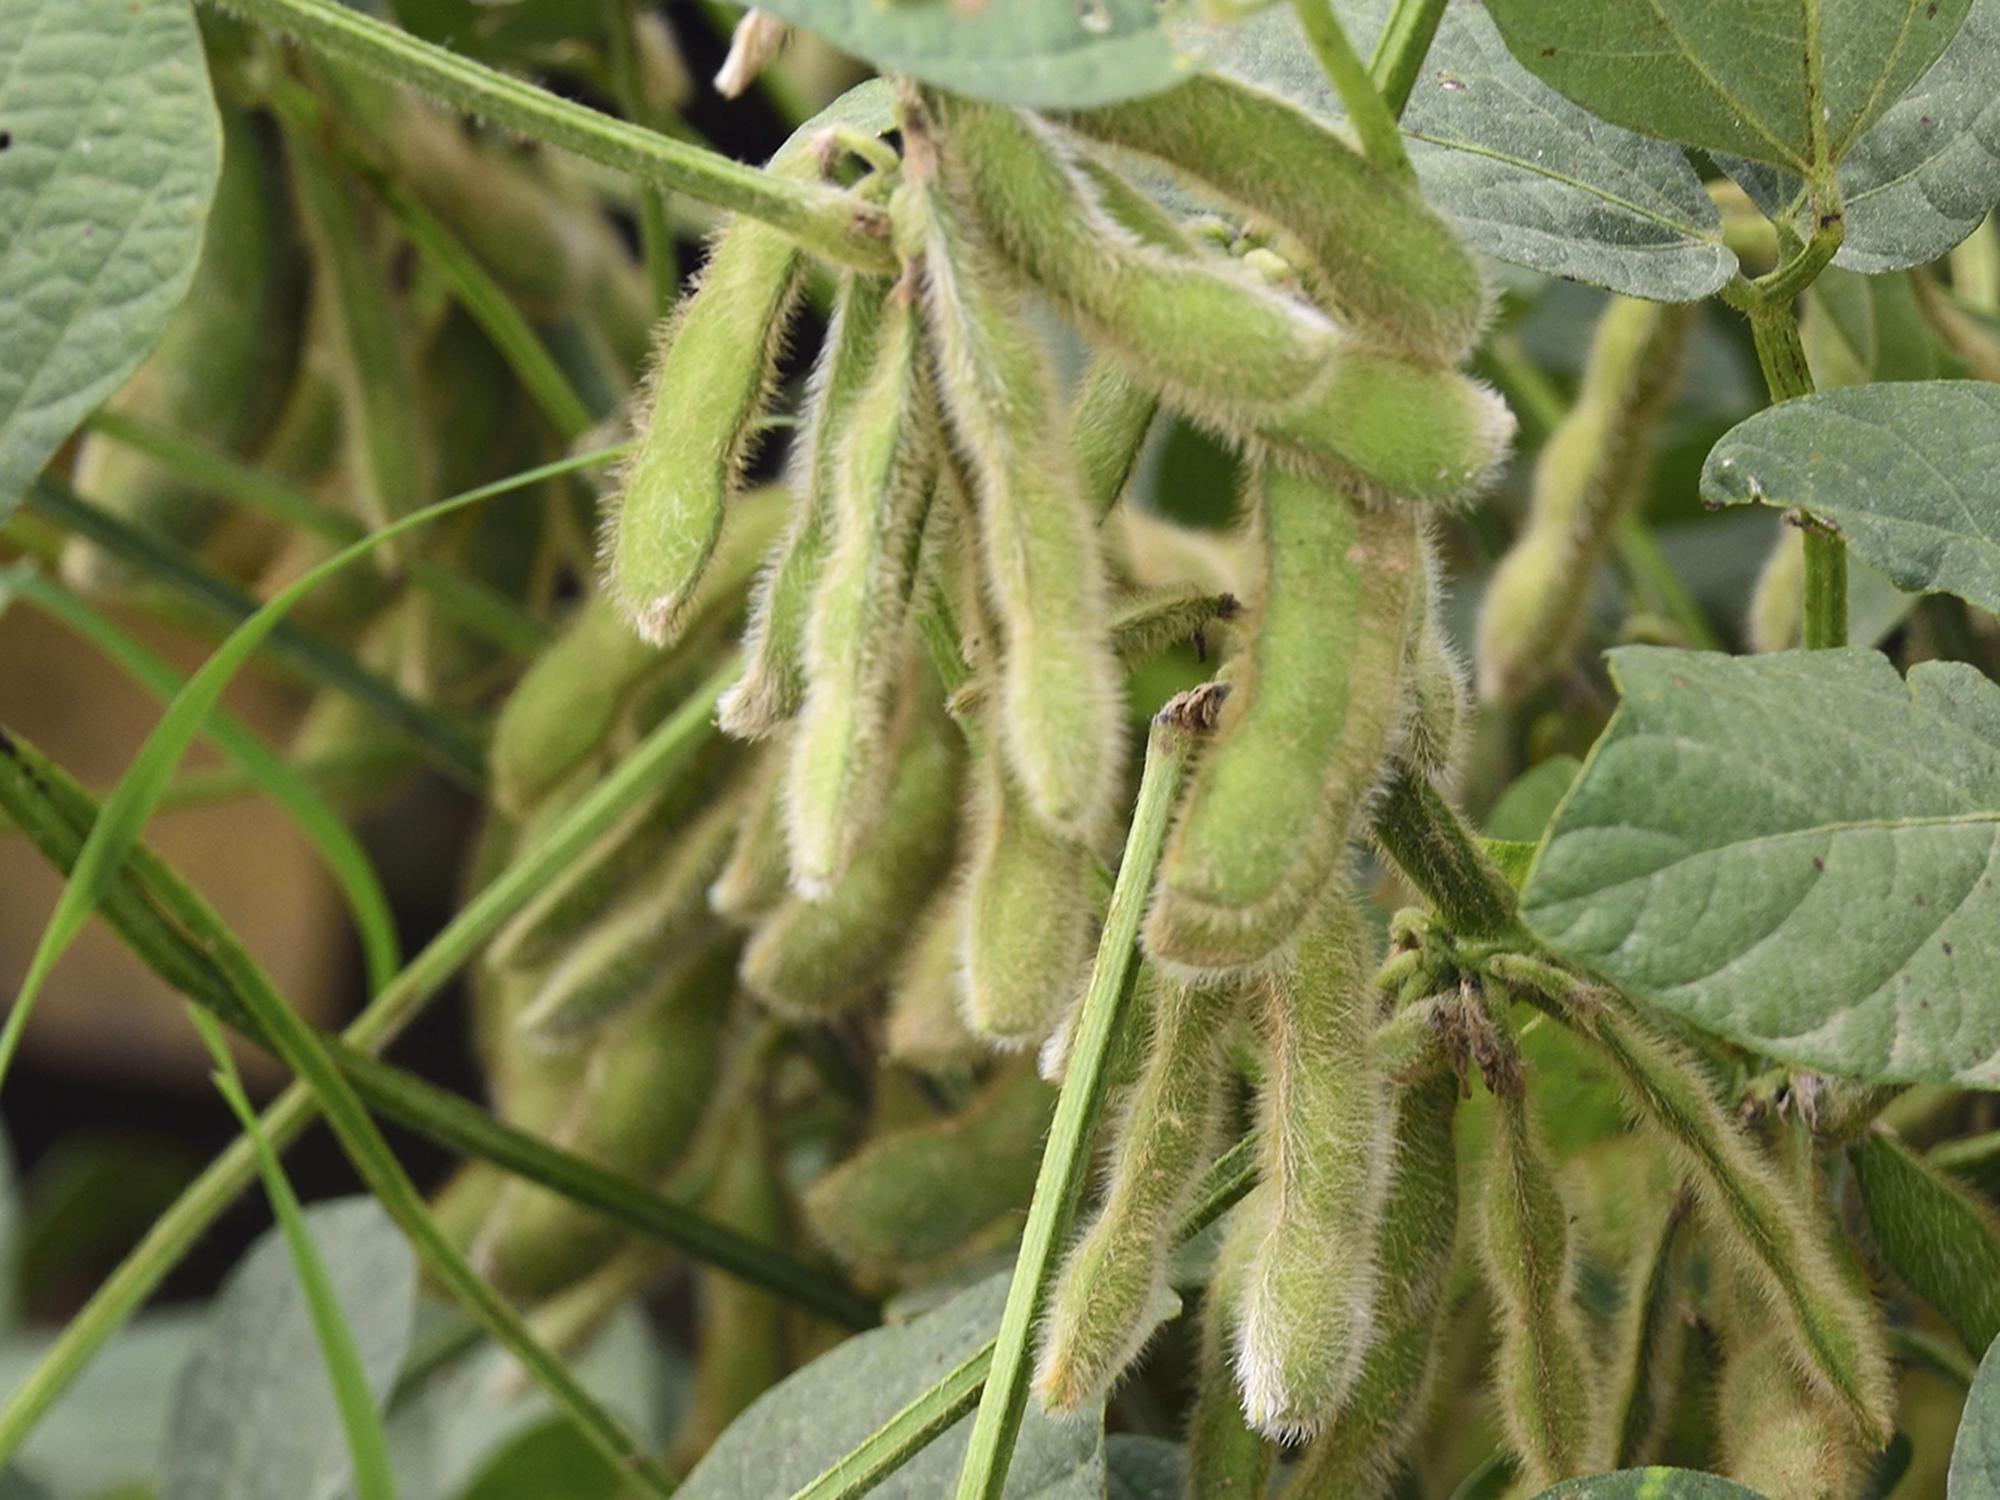 Green soybean plants set pods in a field.